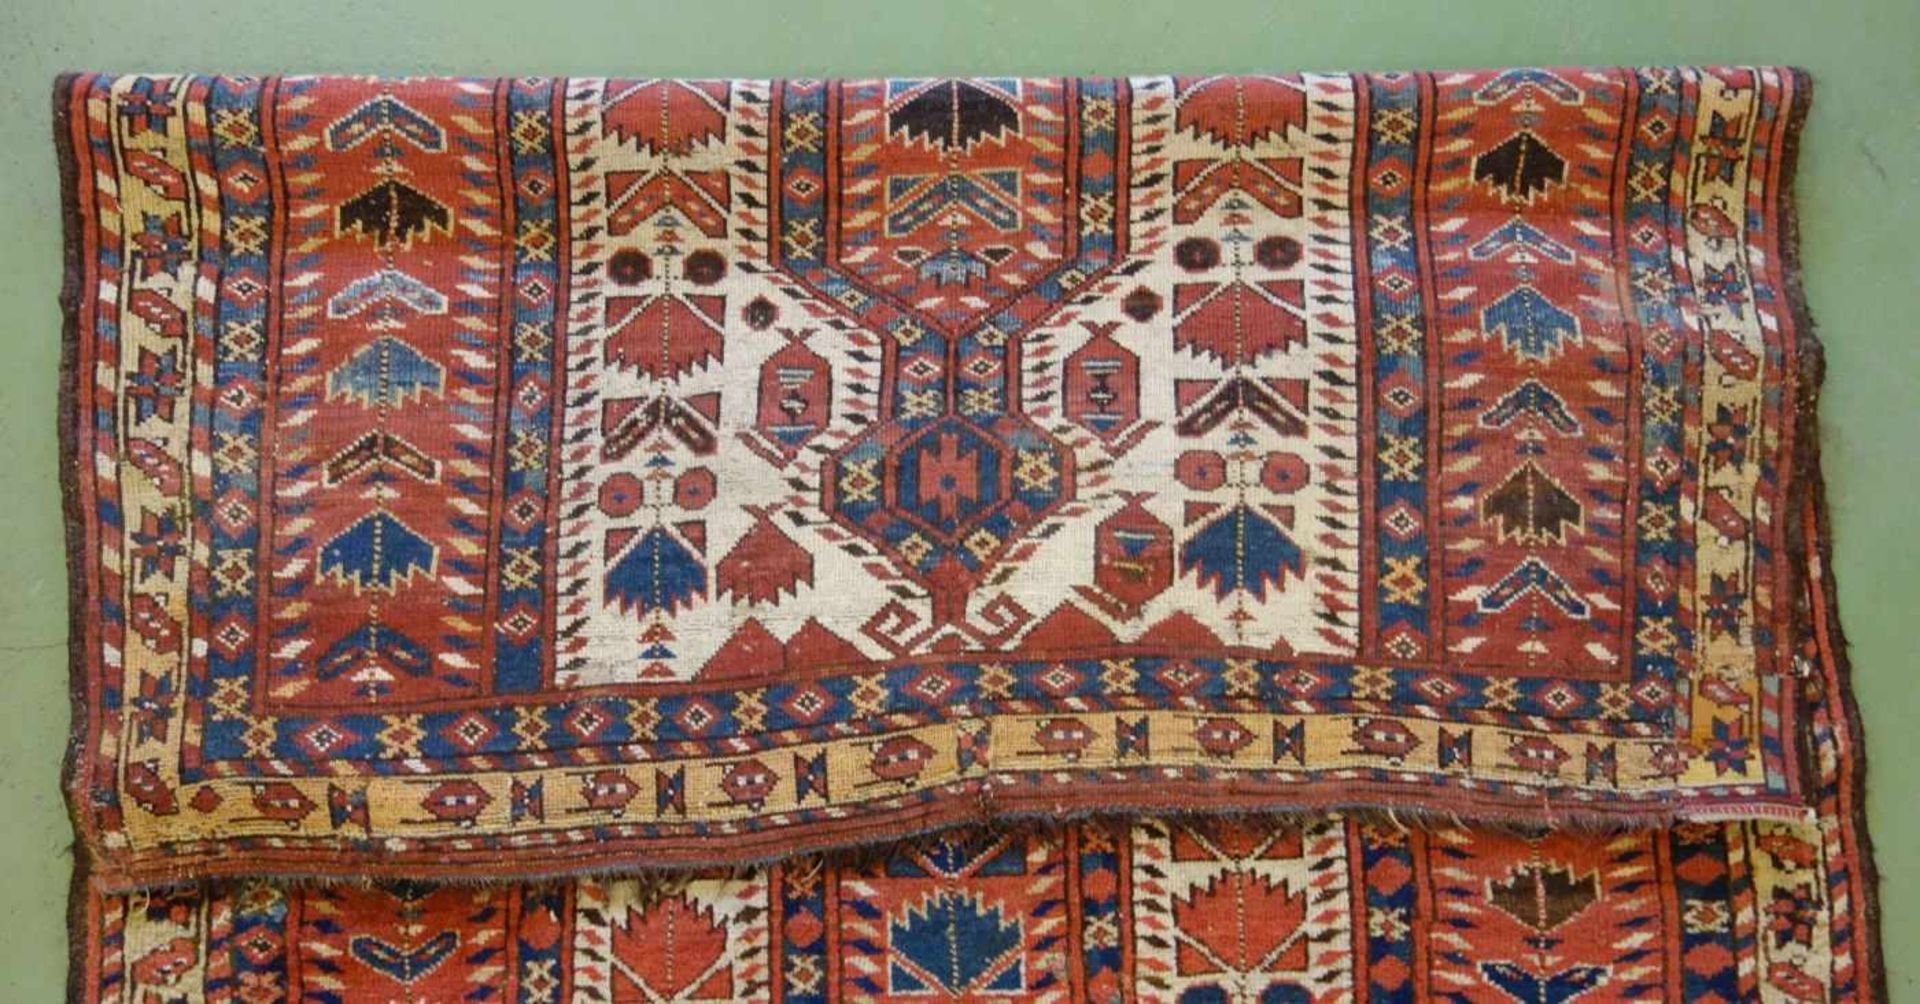 SCHMALER BESCHIR GEBETSTEPPICH / prayer rug, wohl 2. H. 19. Jh., Turkmenistan / Ersari-Beschir ( - Image 11 of 24